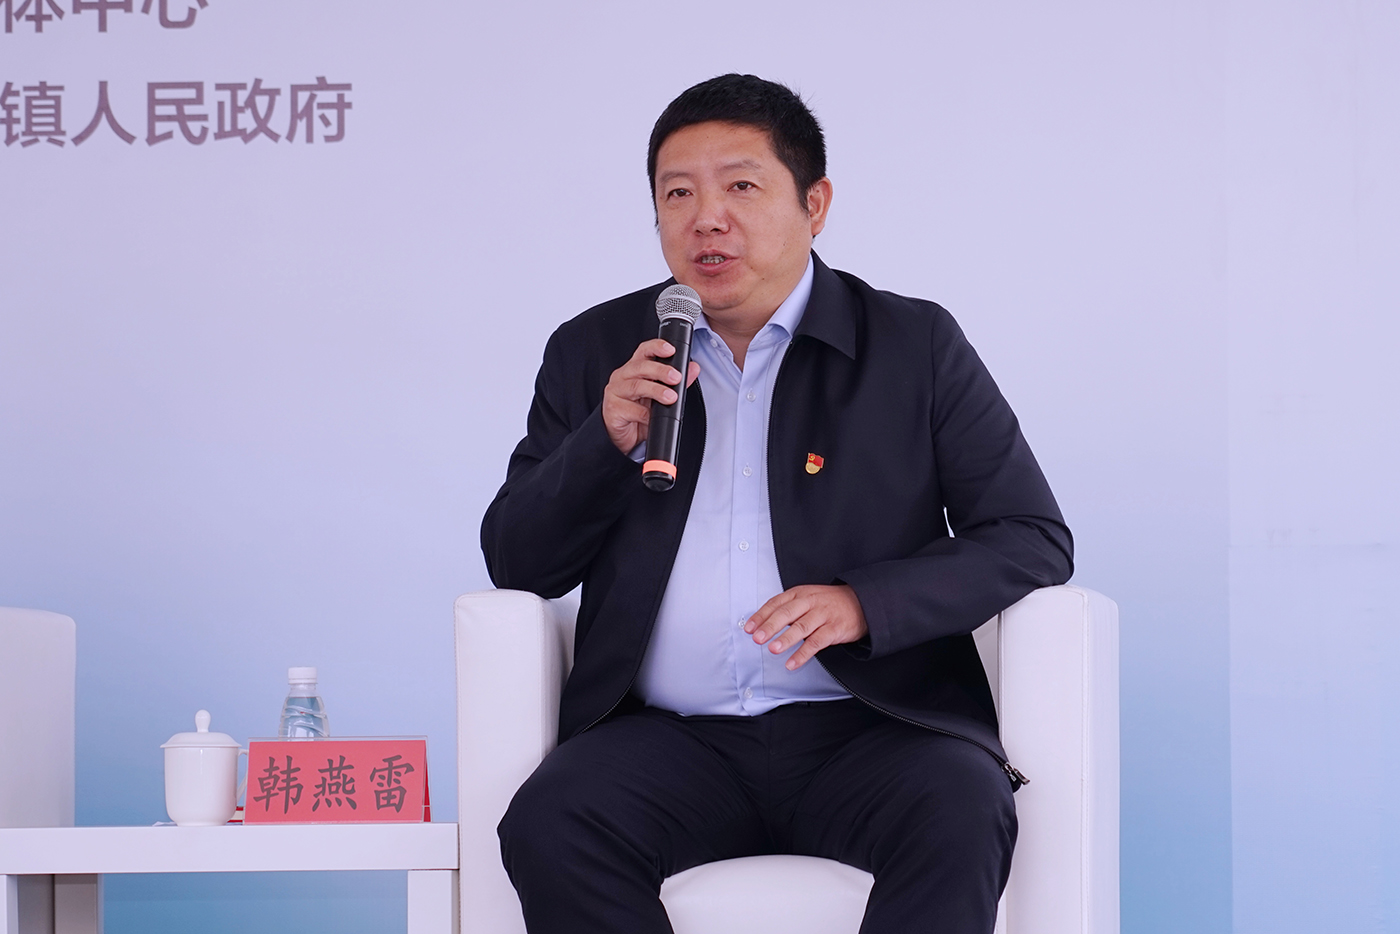 柘林镇副镇长韩燕雷表示，通过近年来的努力，南胜村成功创建为上海市乡村振兴示范村，金海村等9个村成功创